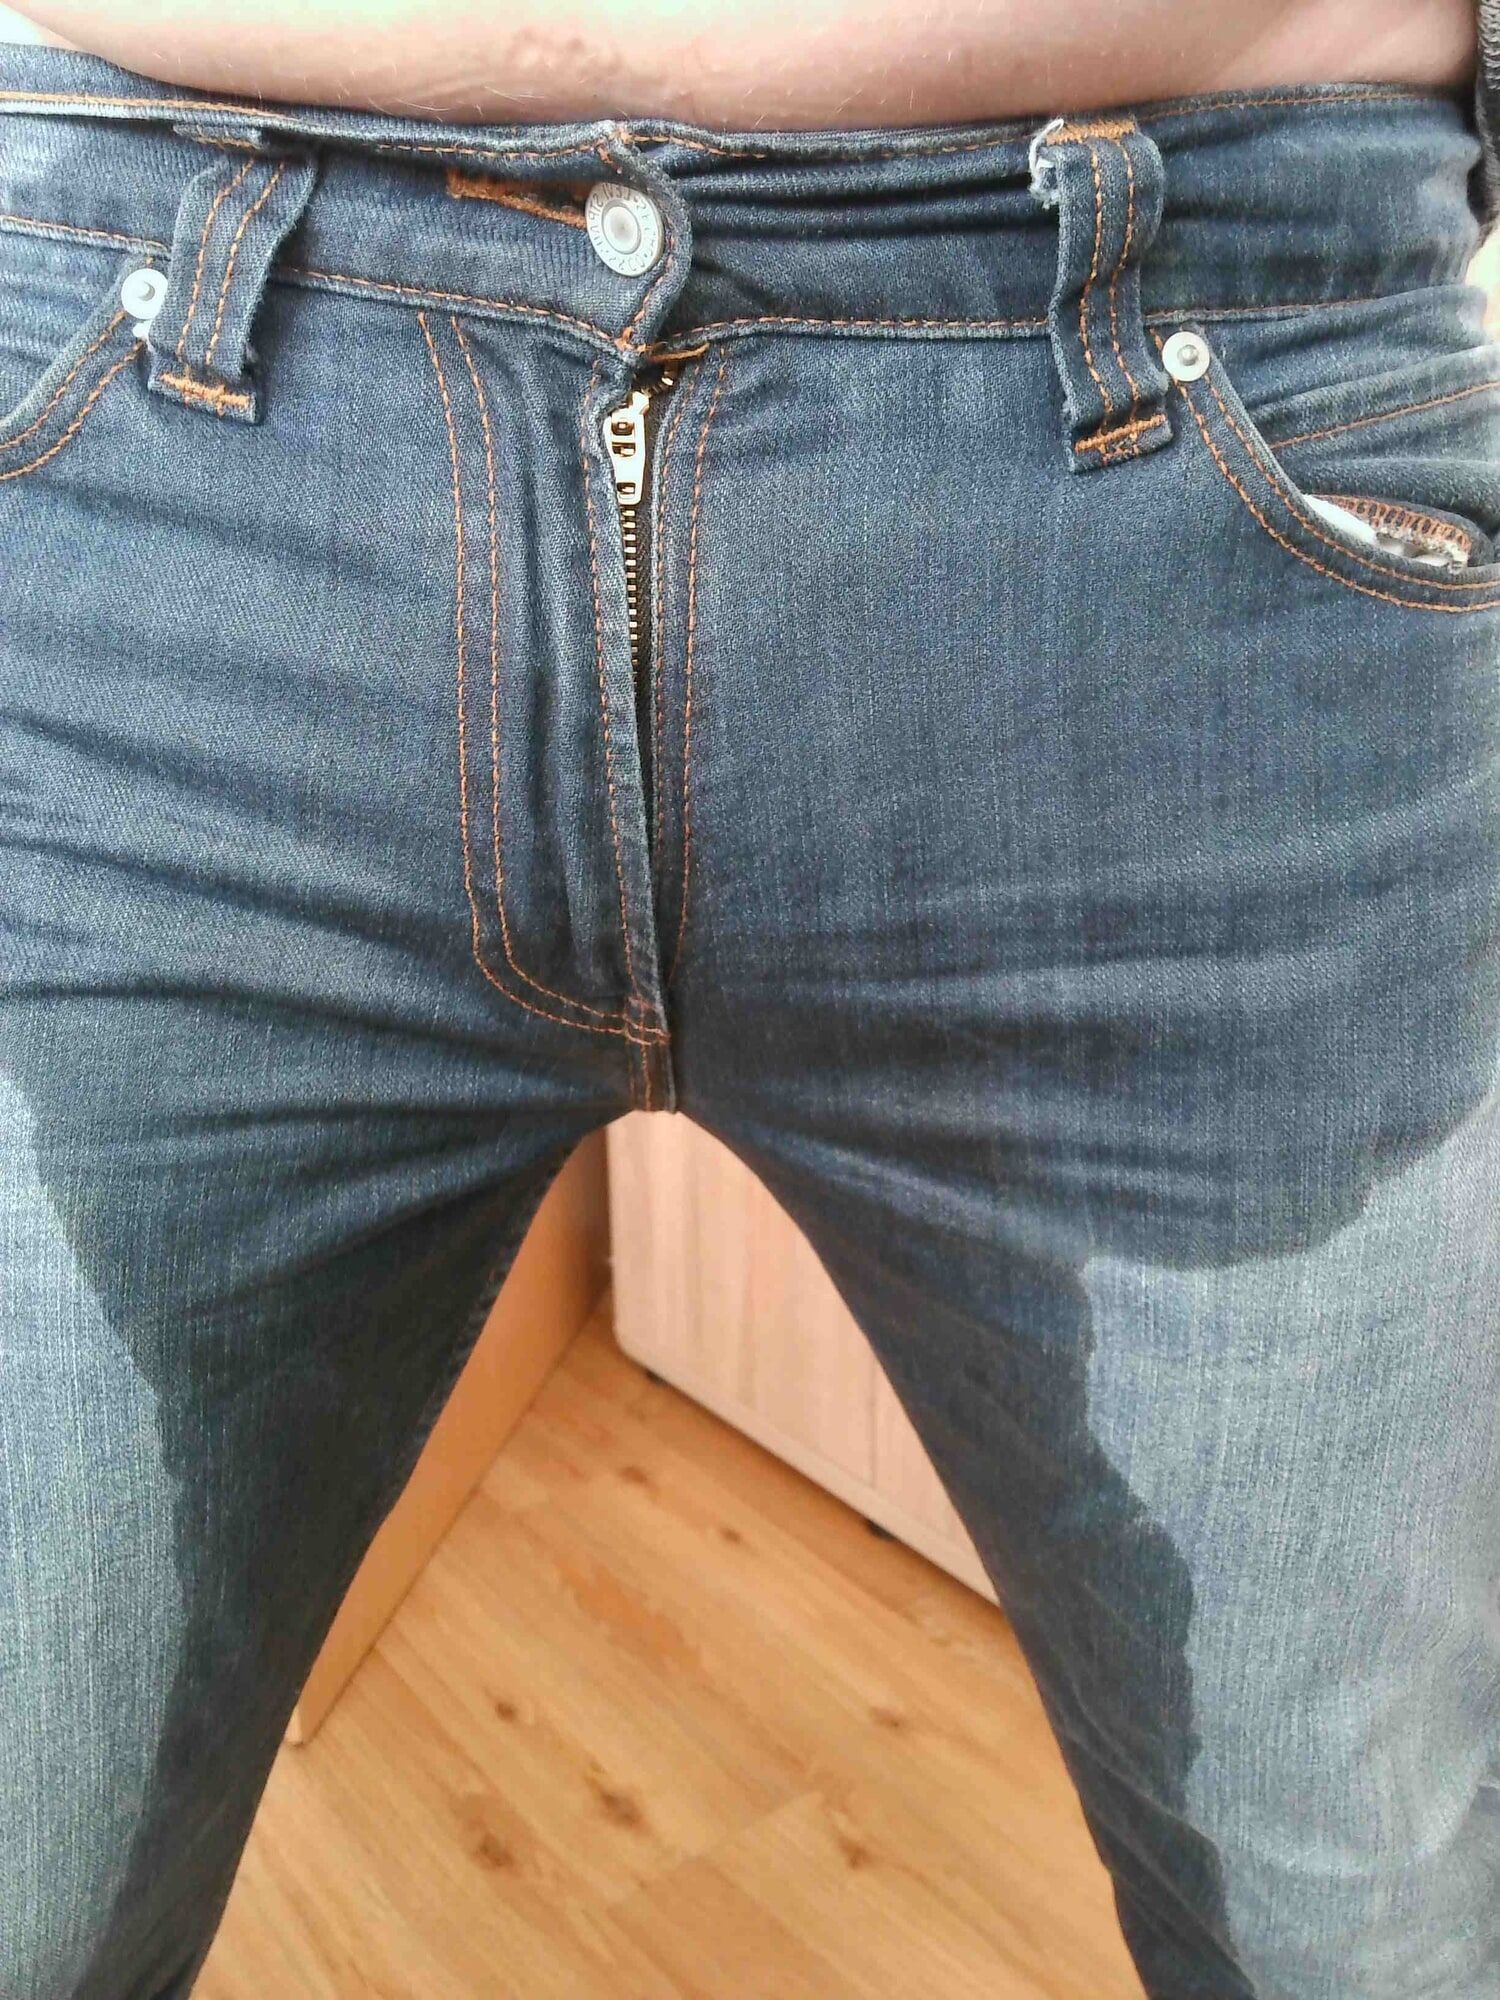 Wet Jeans #13